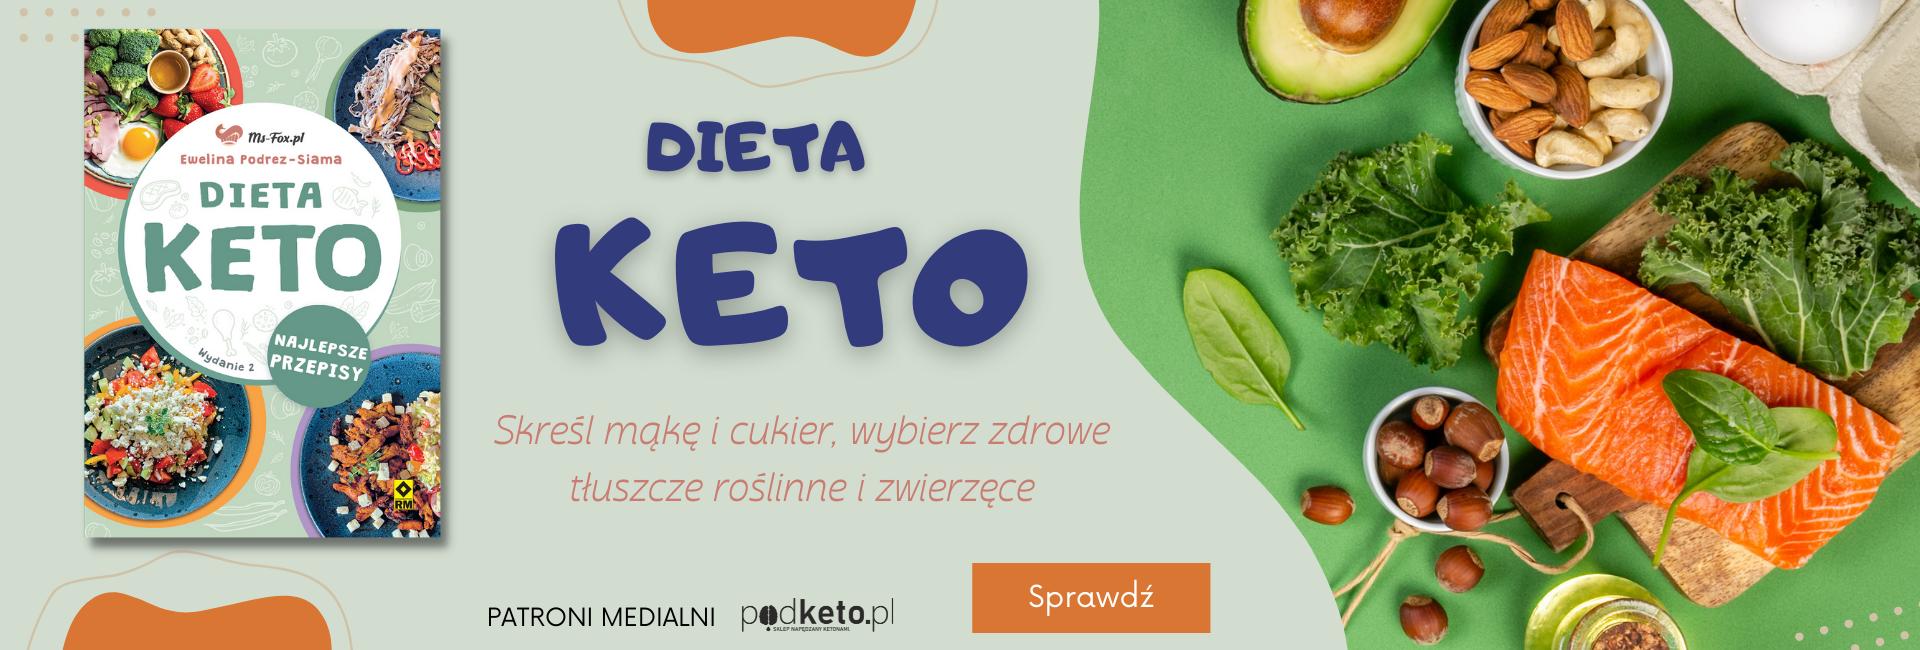 dieta KETO W2